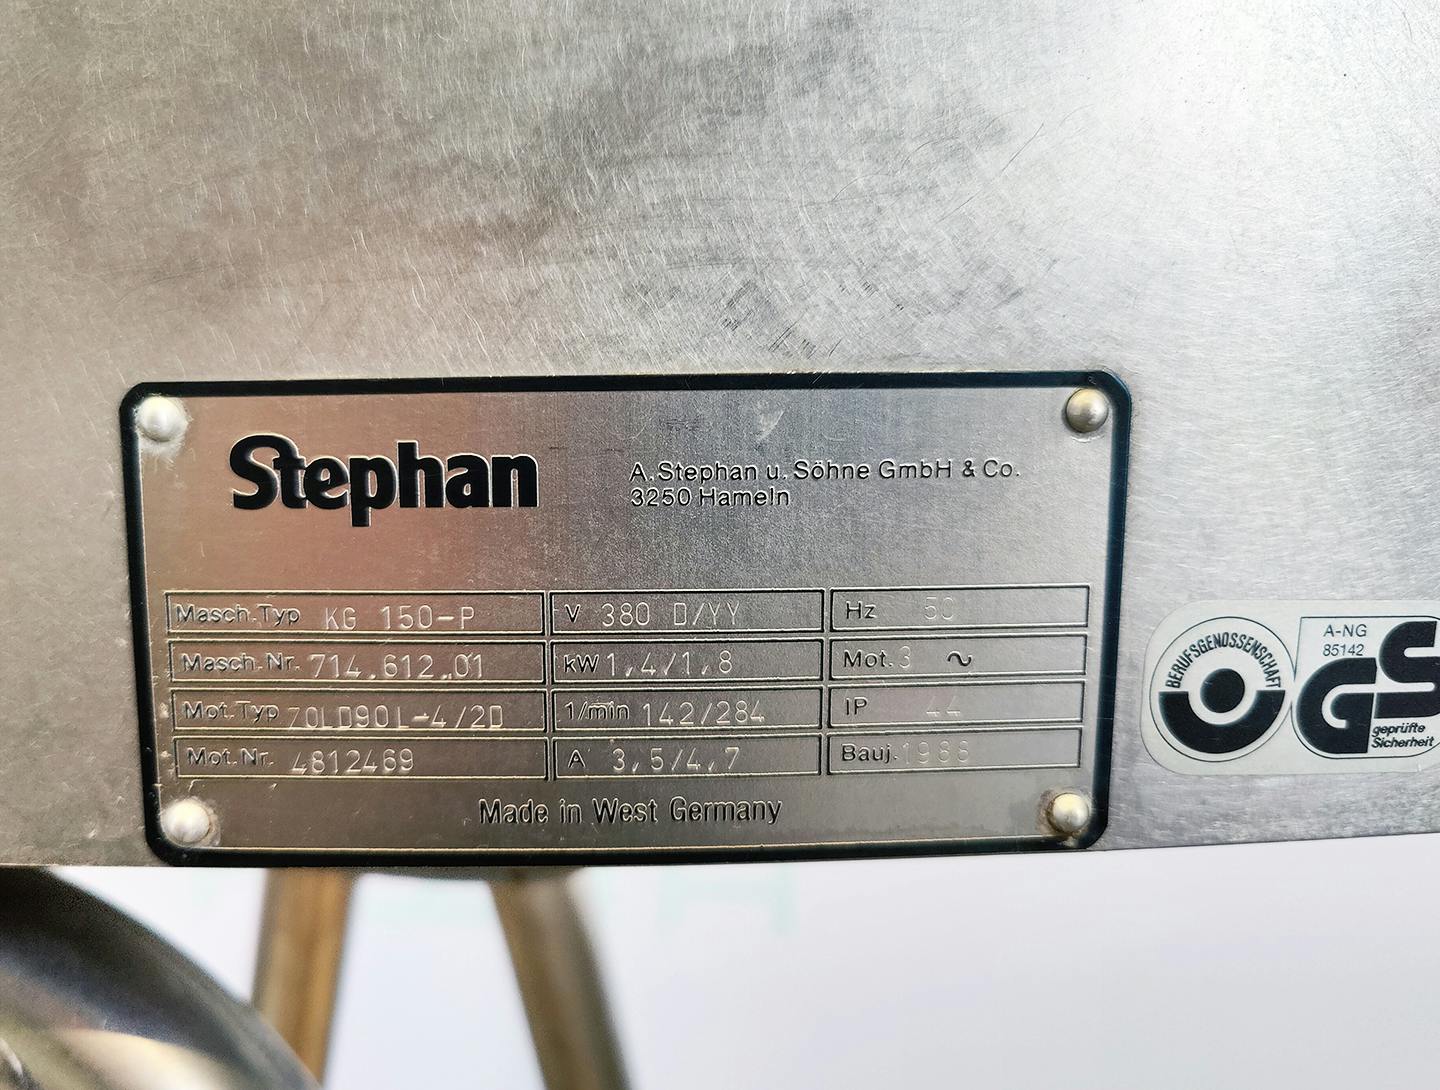 Stephan 150-P - Sítový granulátor - image 7